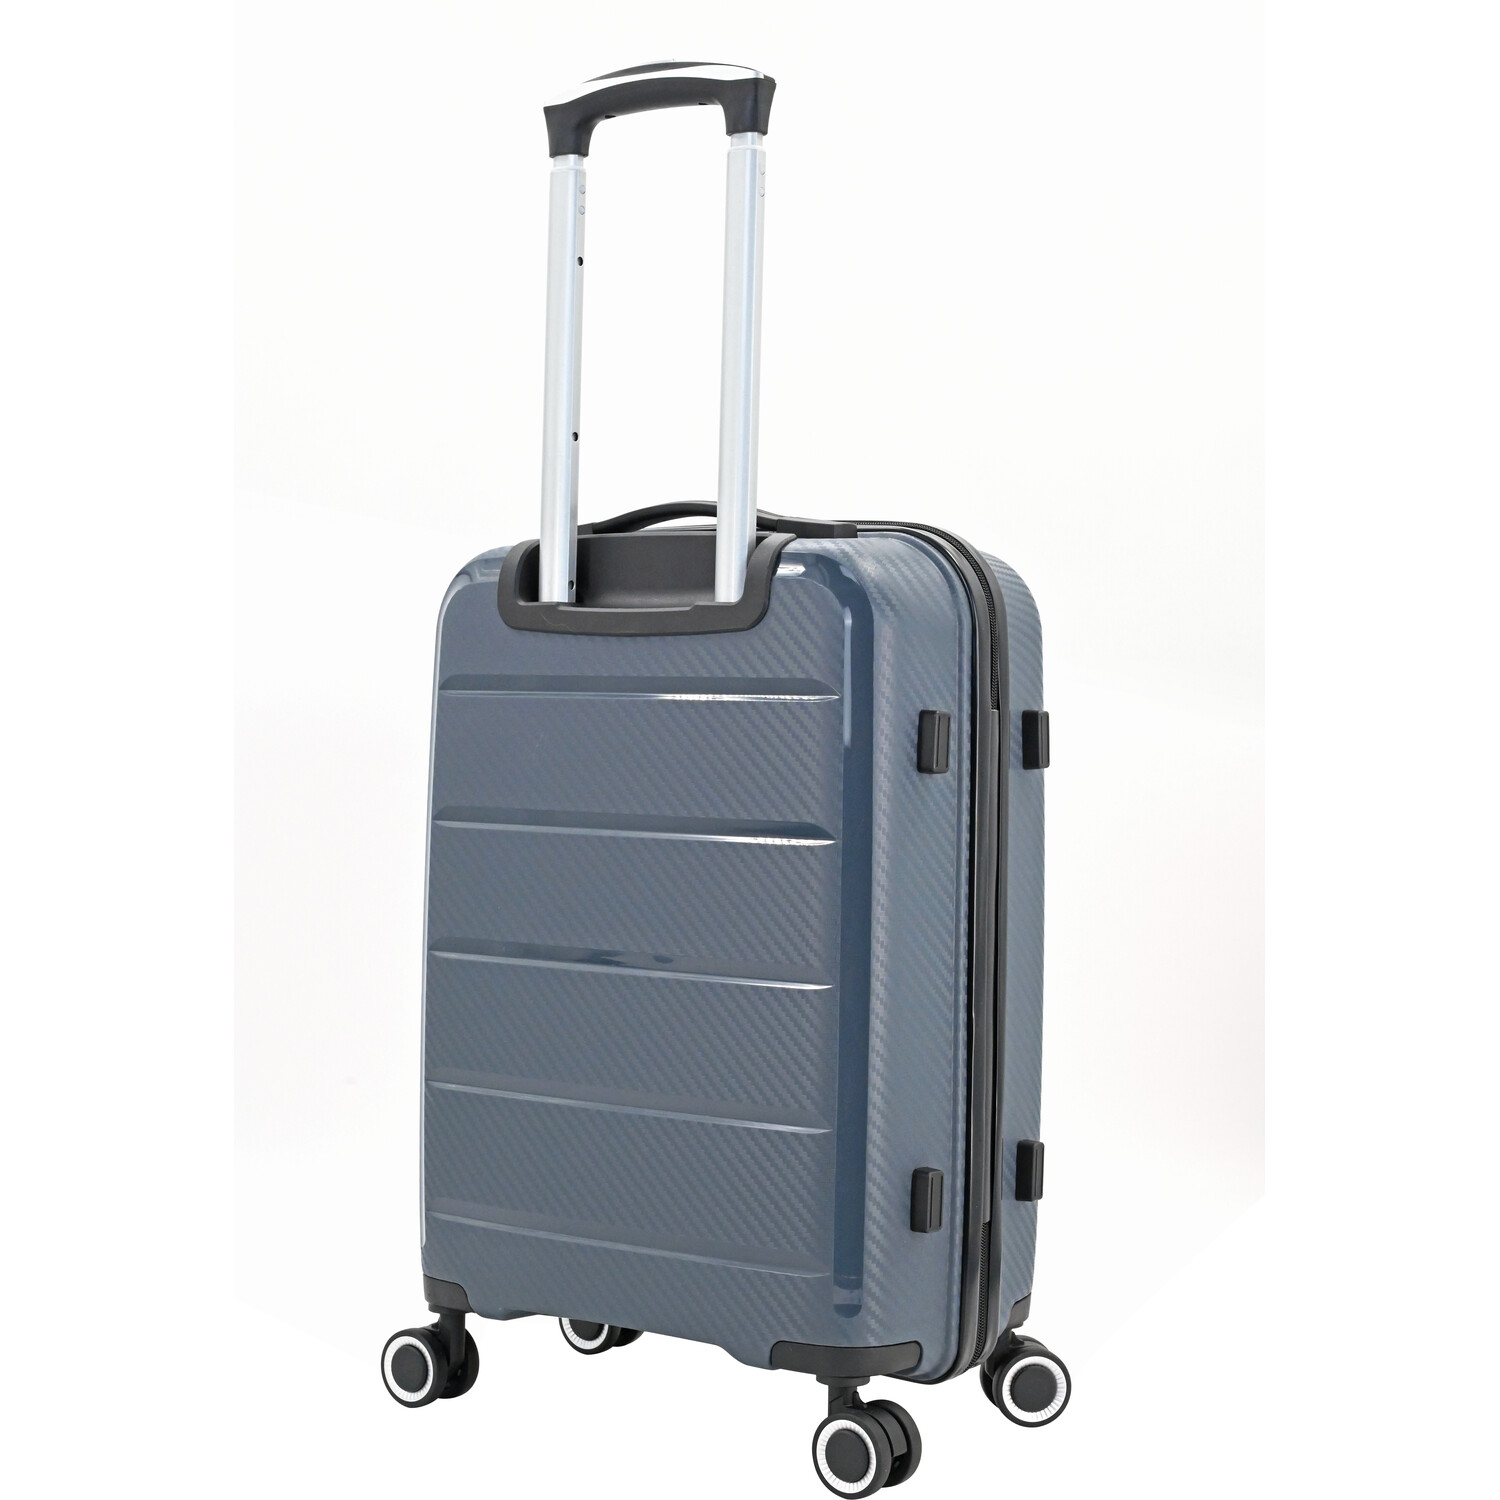 Swift Discovery Luggage Case - Grey / Large Case Image 3